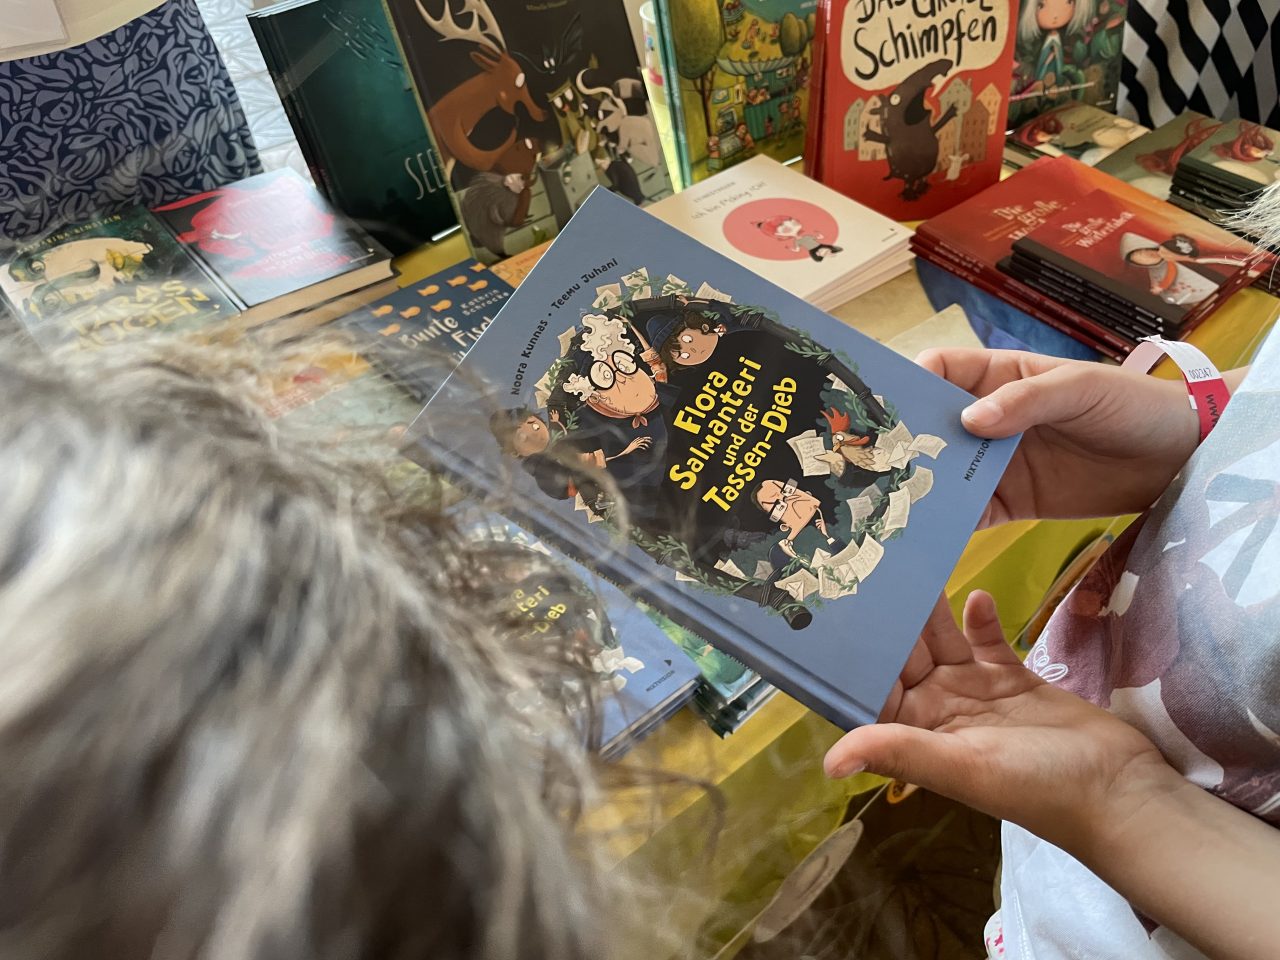 Kinderbücher von mixtvision präsentiert auf einem Tisch - ein Buch wird von einem Kind gehalten